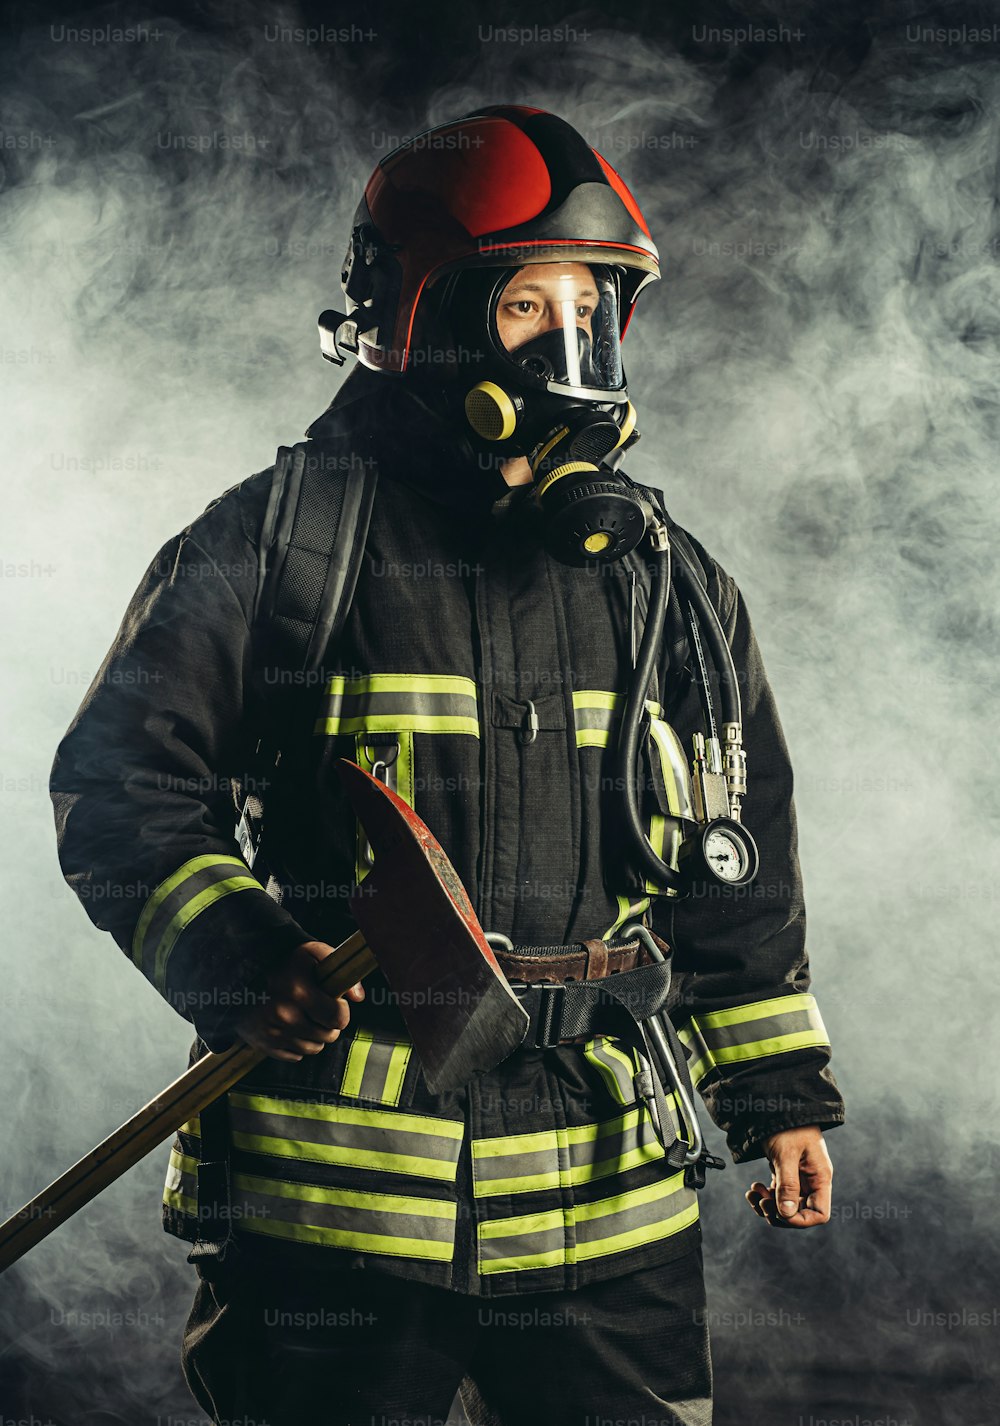 forte pompiere di mezza età che va a salvare e proteggere le persone dal fuoco, indossando maschera o casco speciale, uniforme protettiva